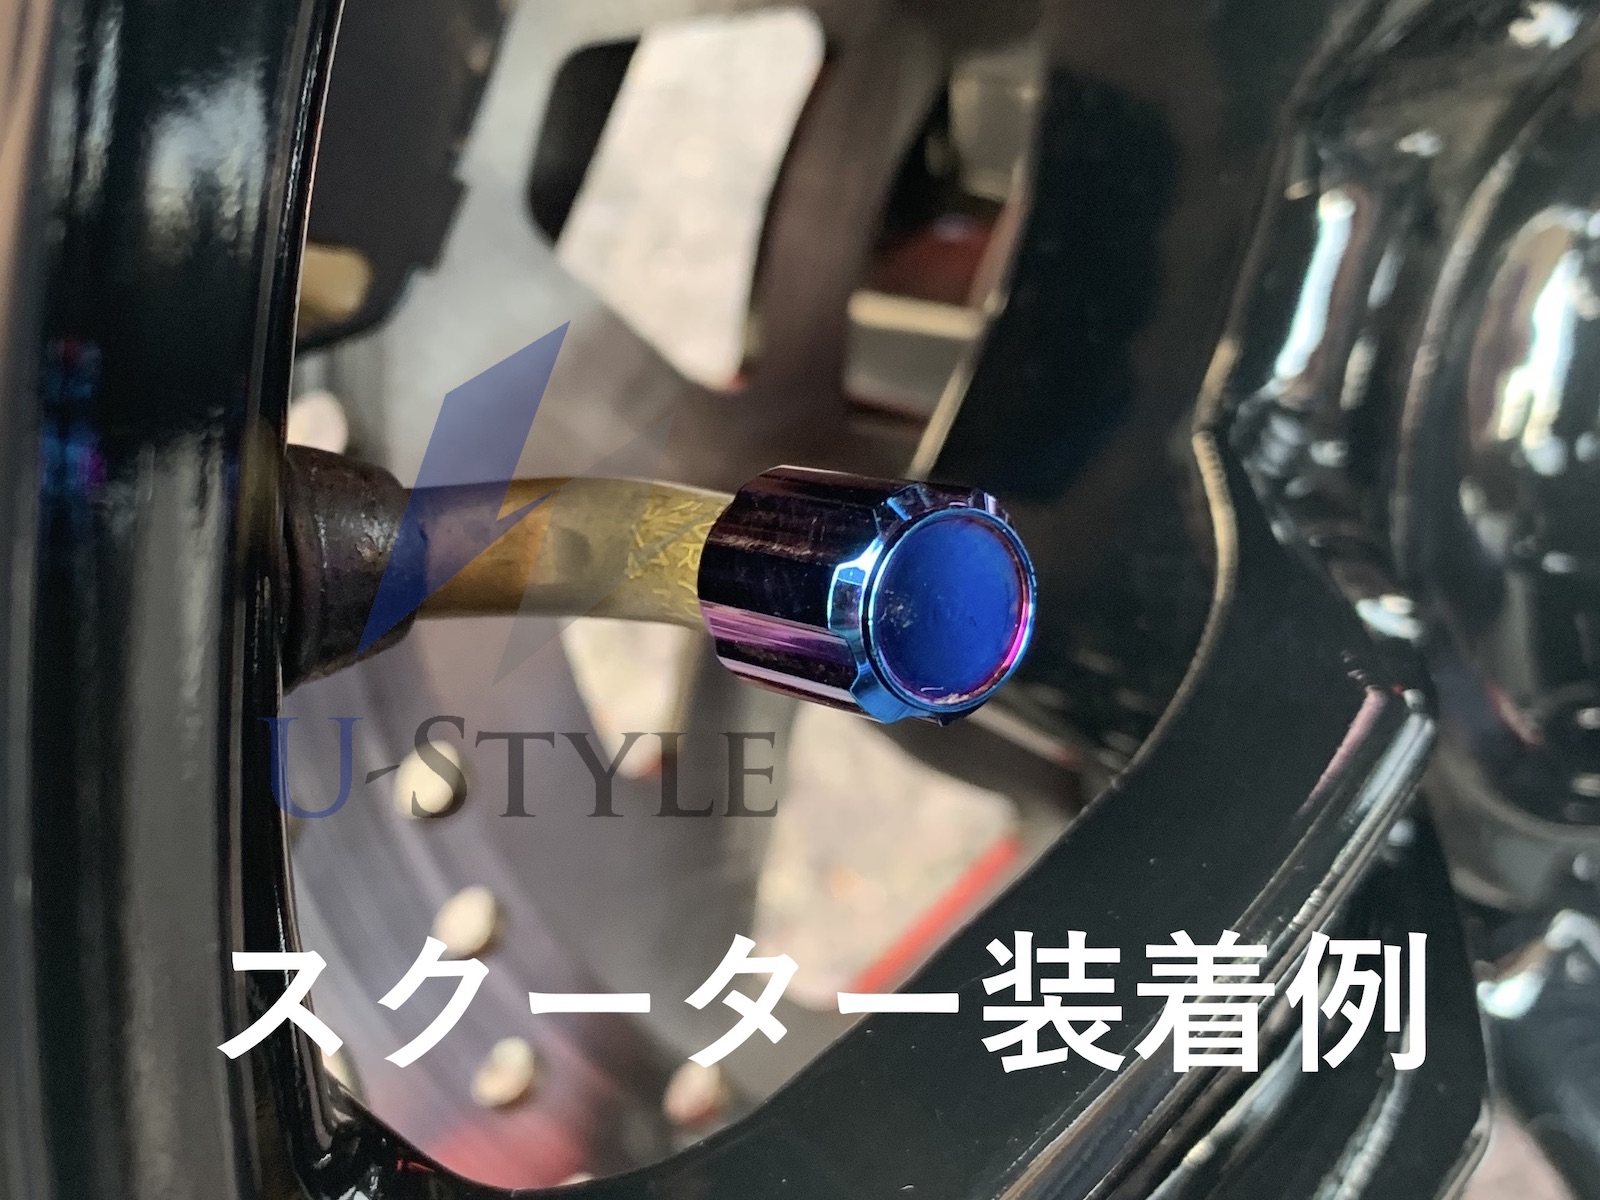 激安直営店 アルミ製 エアバルブキャップ チタン 焼き色風 虹色 レインボー タイヤ バルブキャップ 車 バイク 汎用パーツ ギヤ型 ネオクローム風  4個セット 台湾製